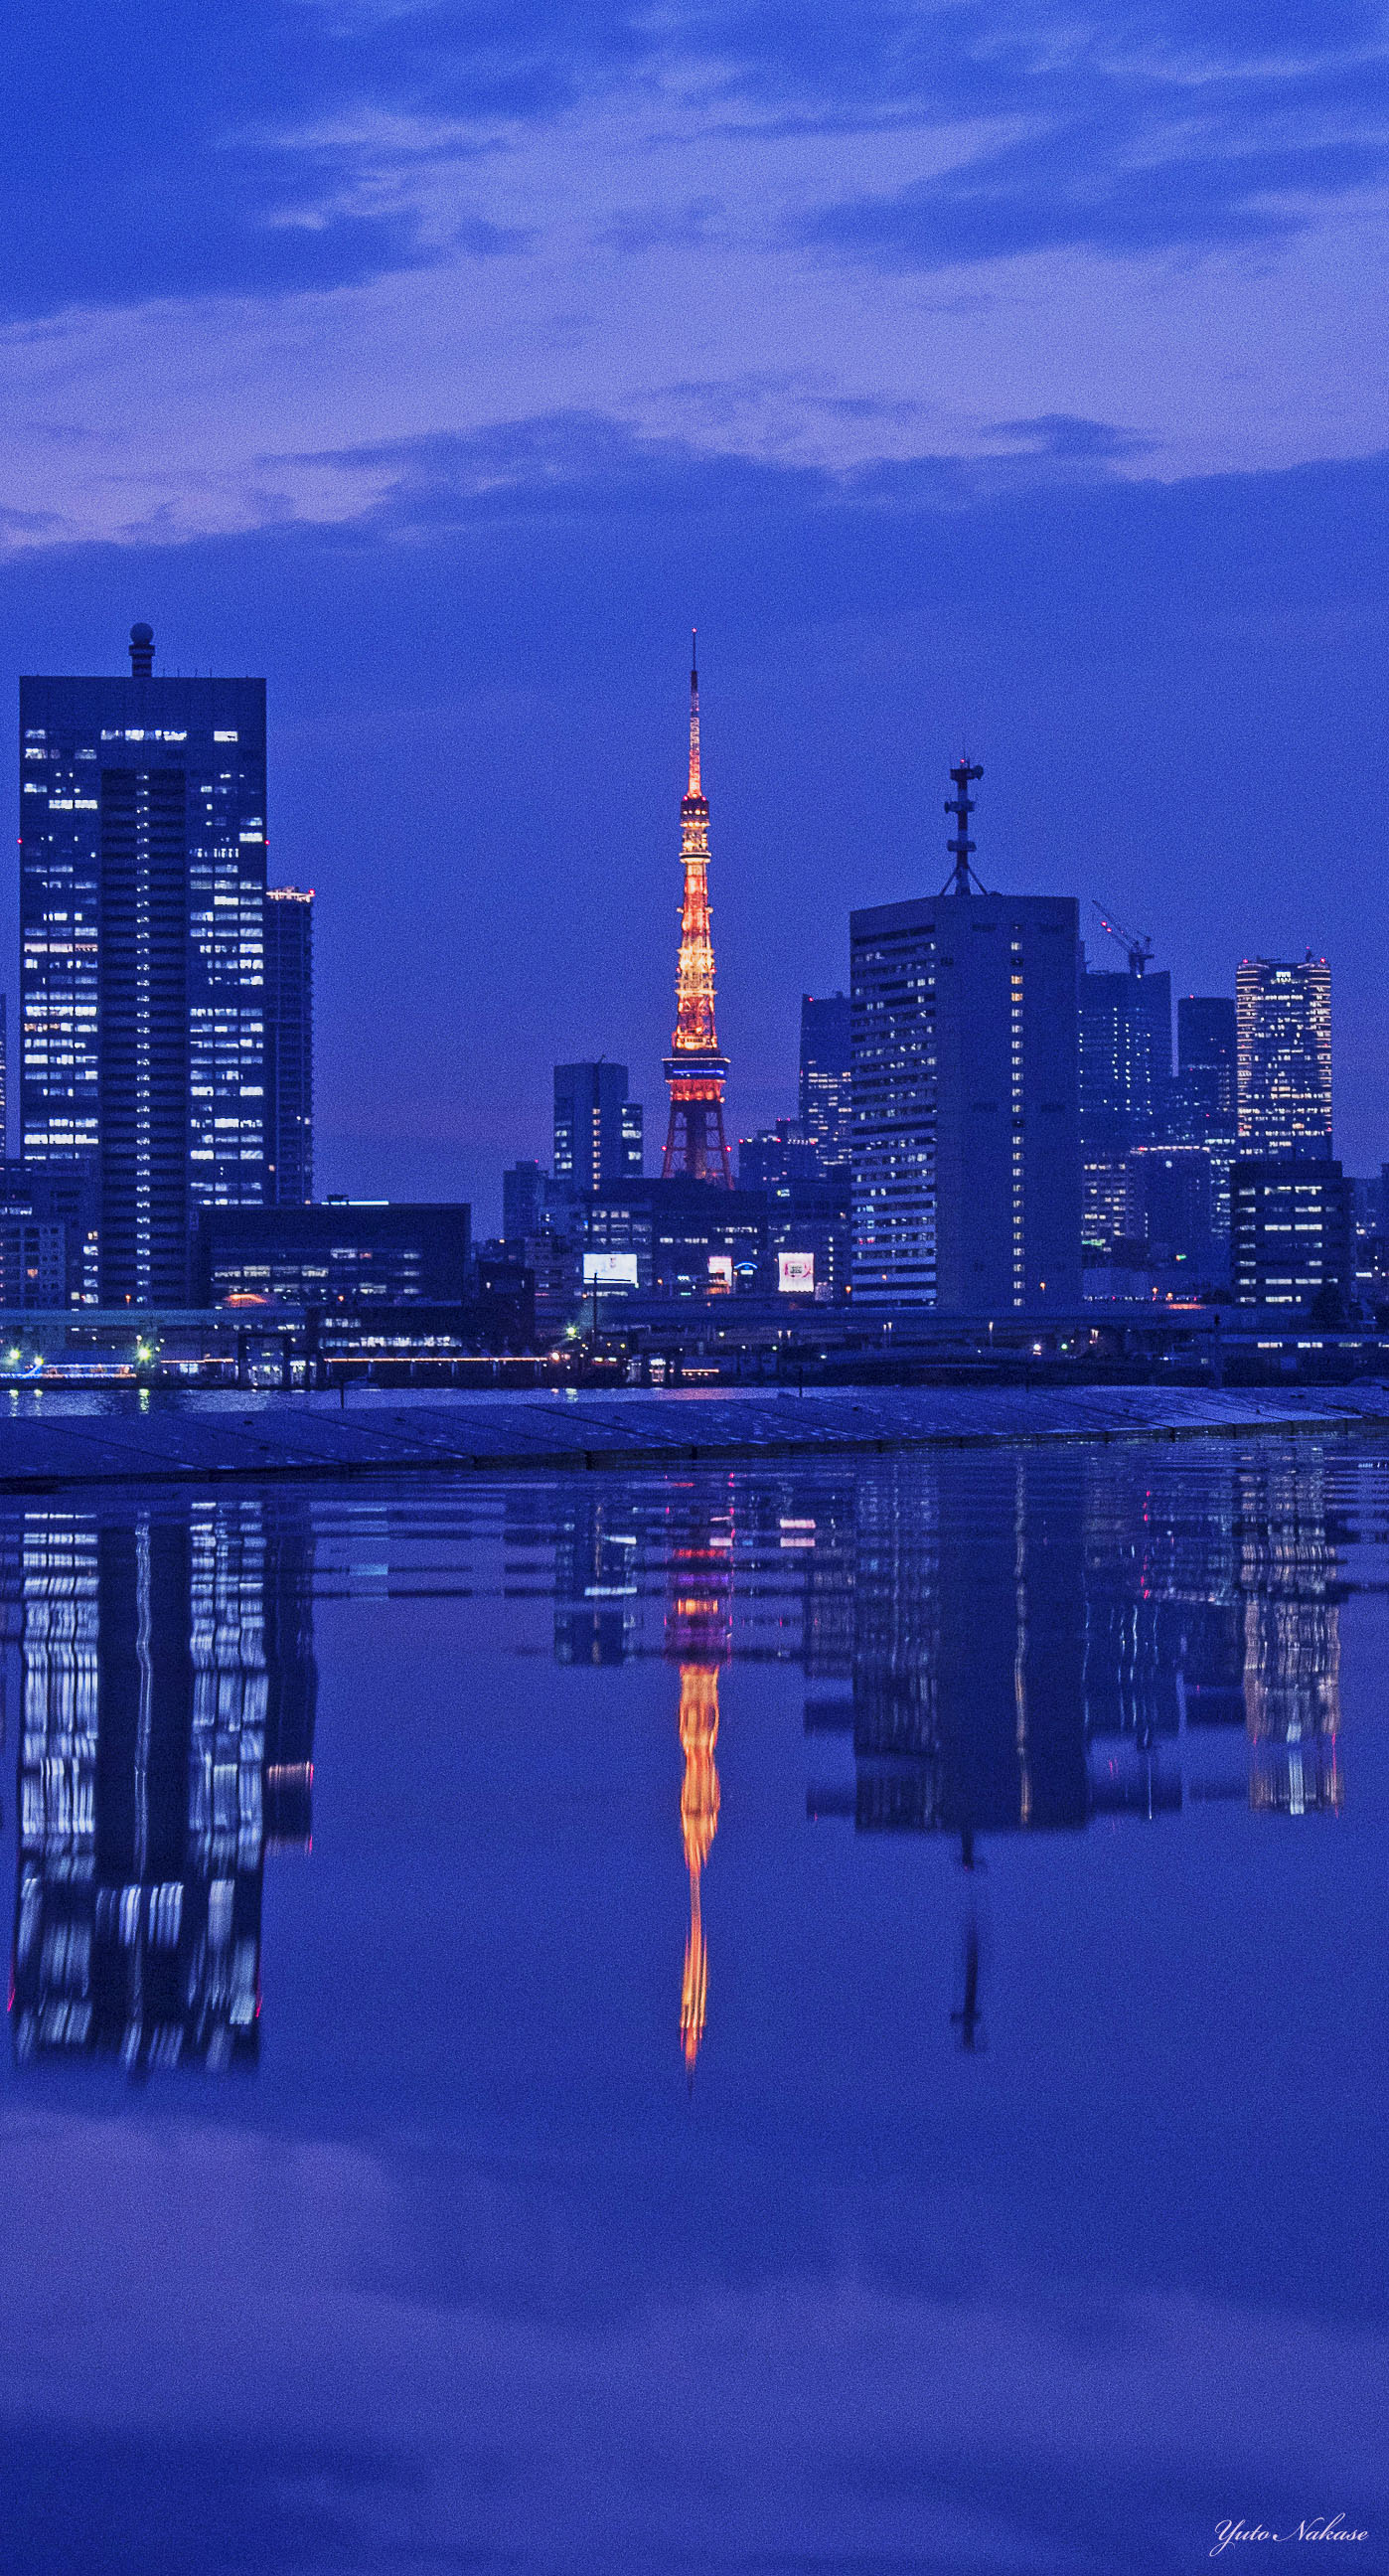 中瀬雄登 写真教室やってます 東京タワー大好きです 六本木ヒルズからと晴海ふ頭からの夜景です スマホの壁紙として使用できるサイズです Iphone壁紙 ニッポンを撮る 東京タワー 六本木ヒルズ 晴海ふ頭 夜景 T Co Mb7eopip Twitter